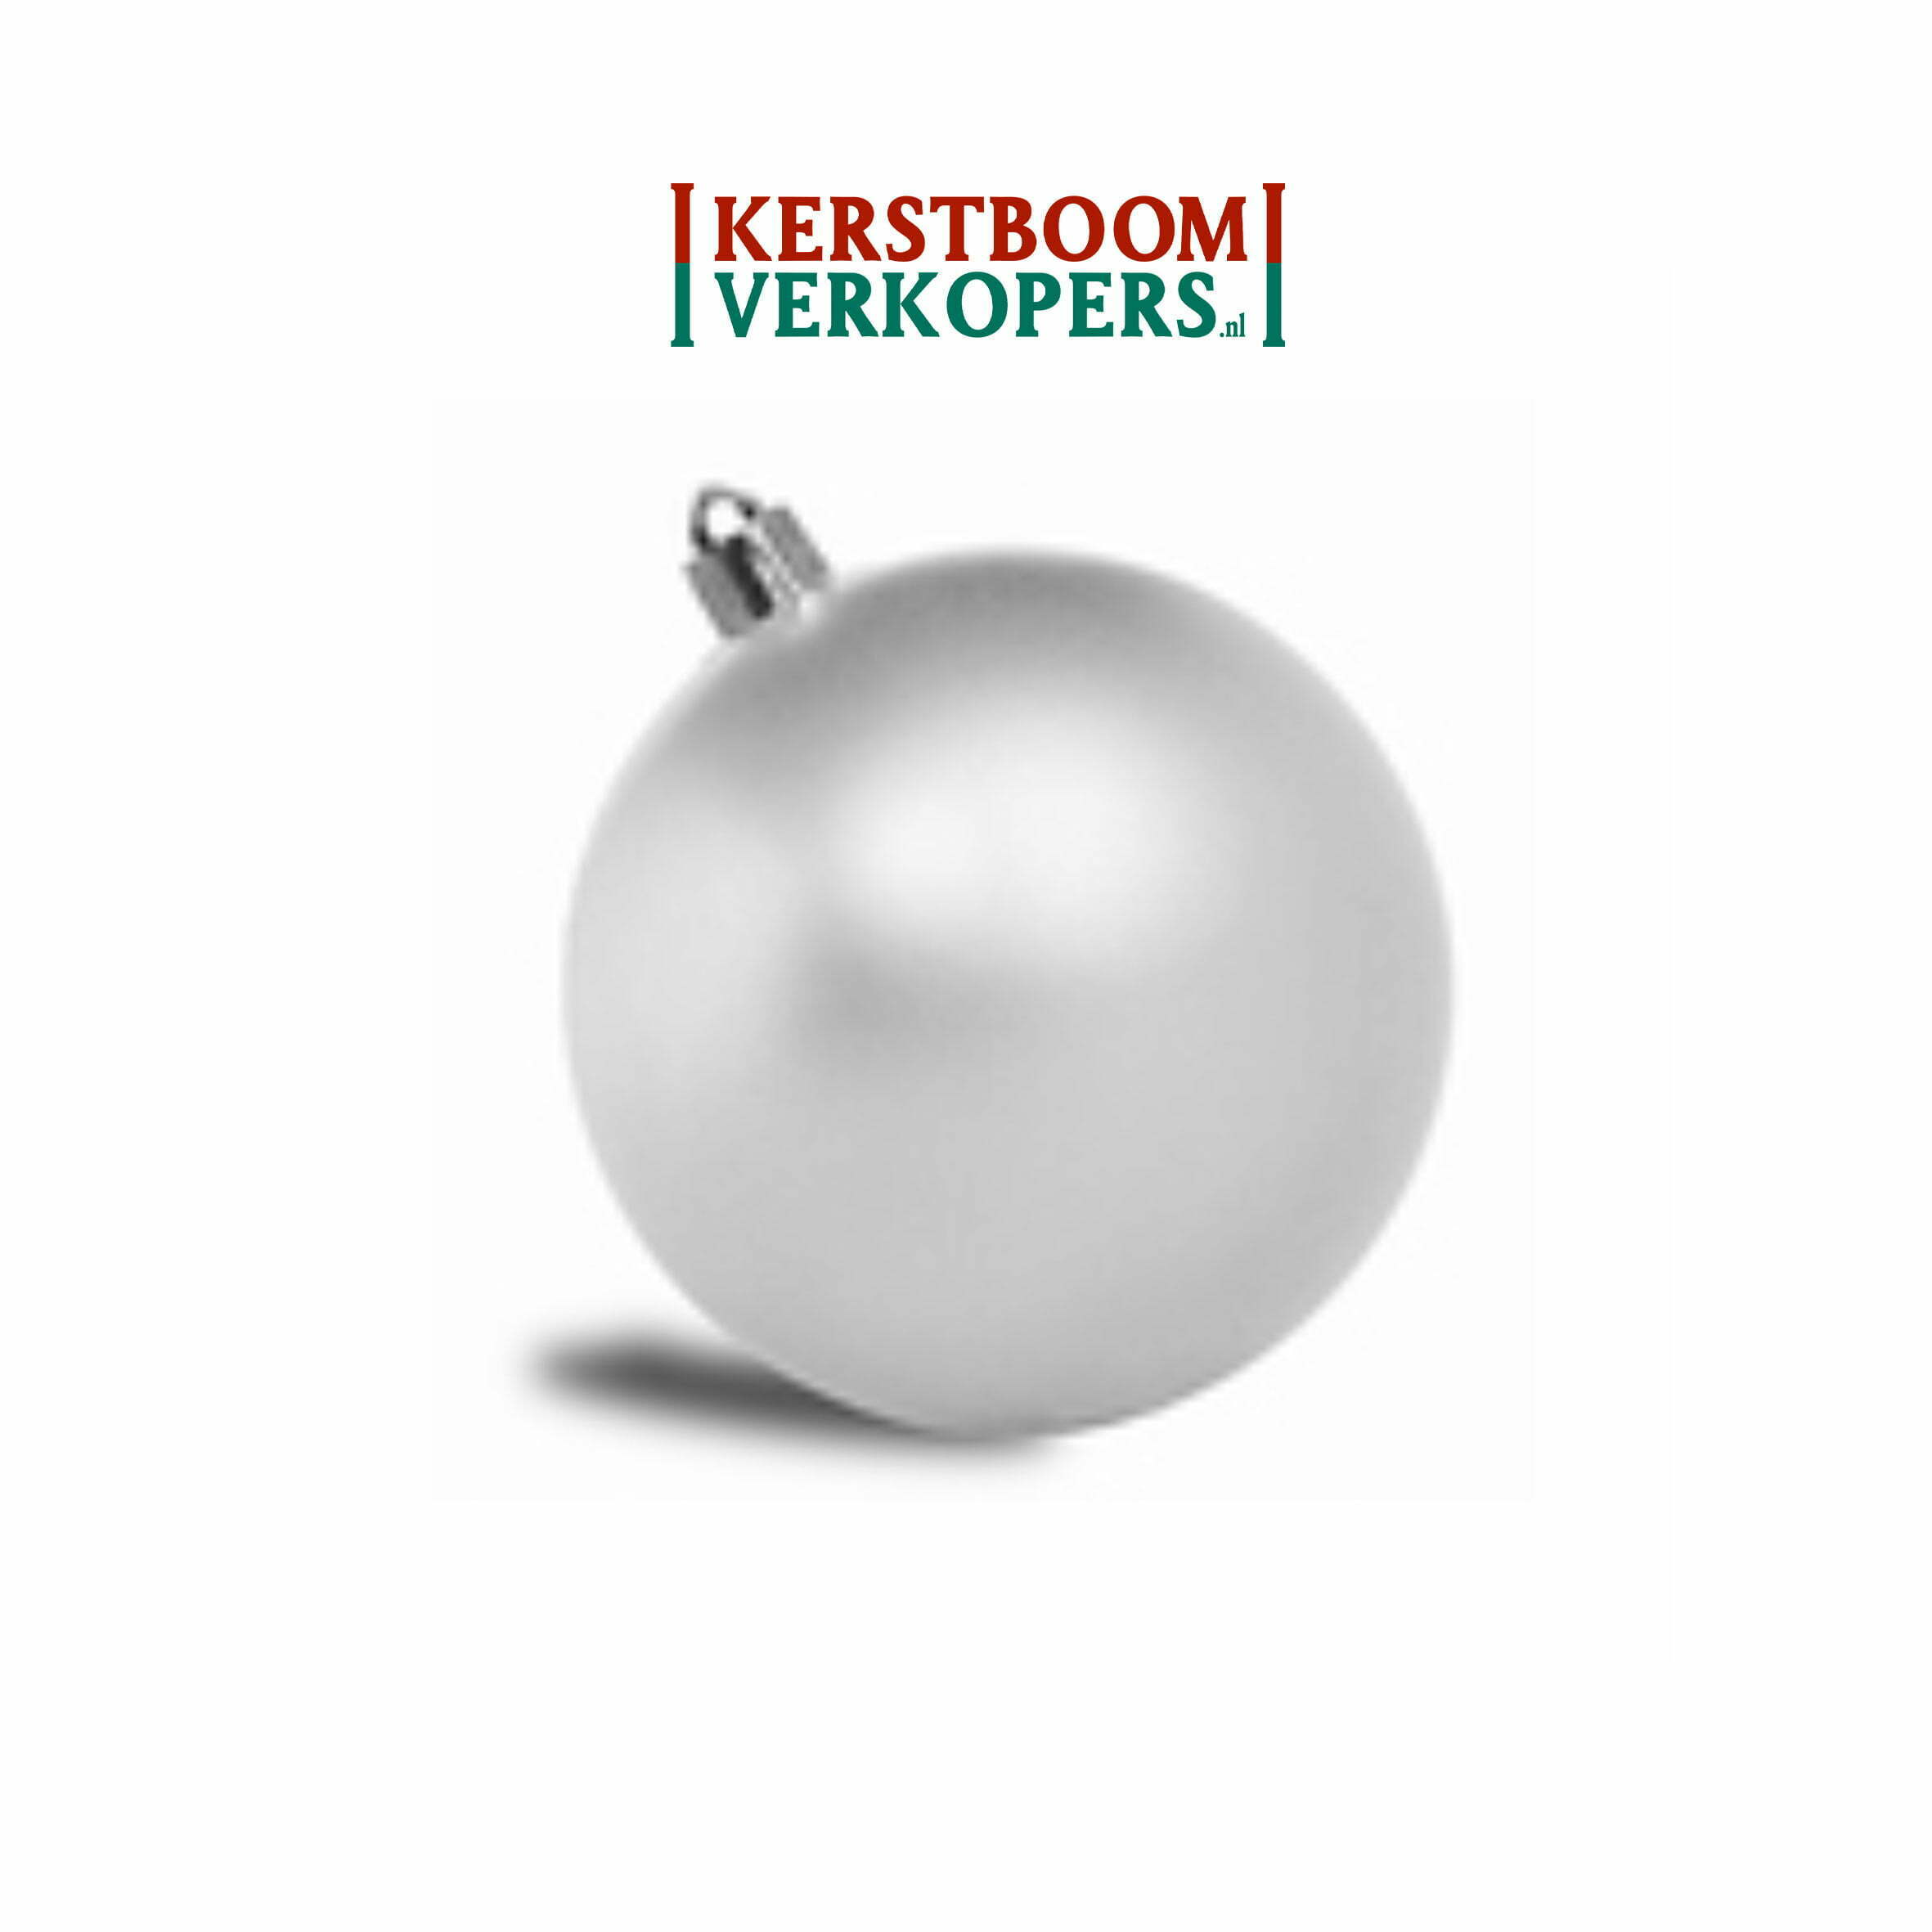 Mevrouw iets Vertrappen Kerstballen zilver (mat) - 8cm - €99,- per st. - Kerstboomverkopers.nl